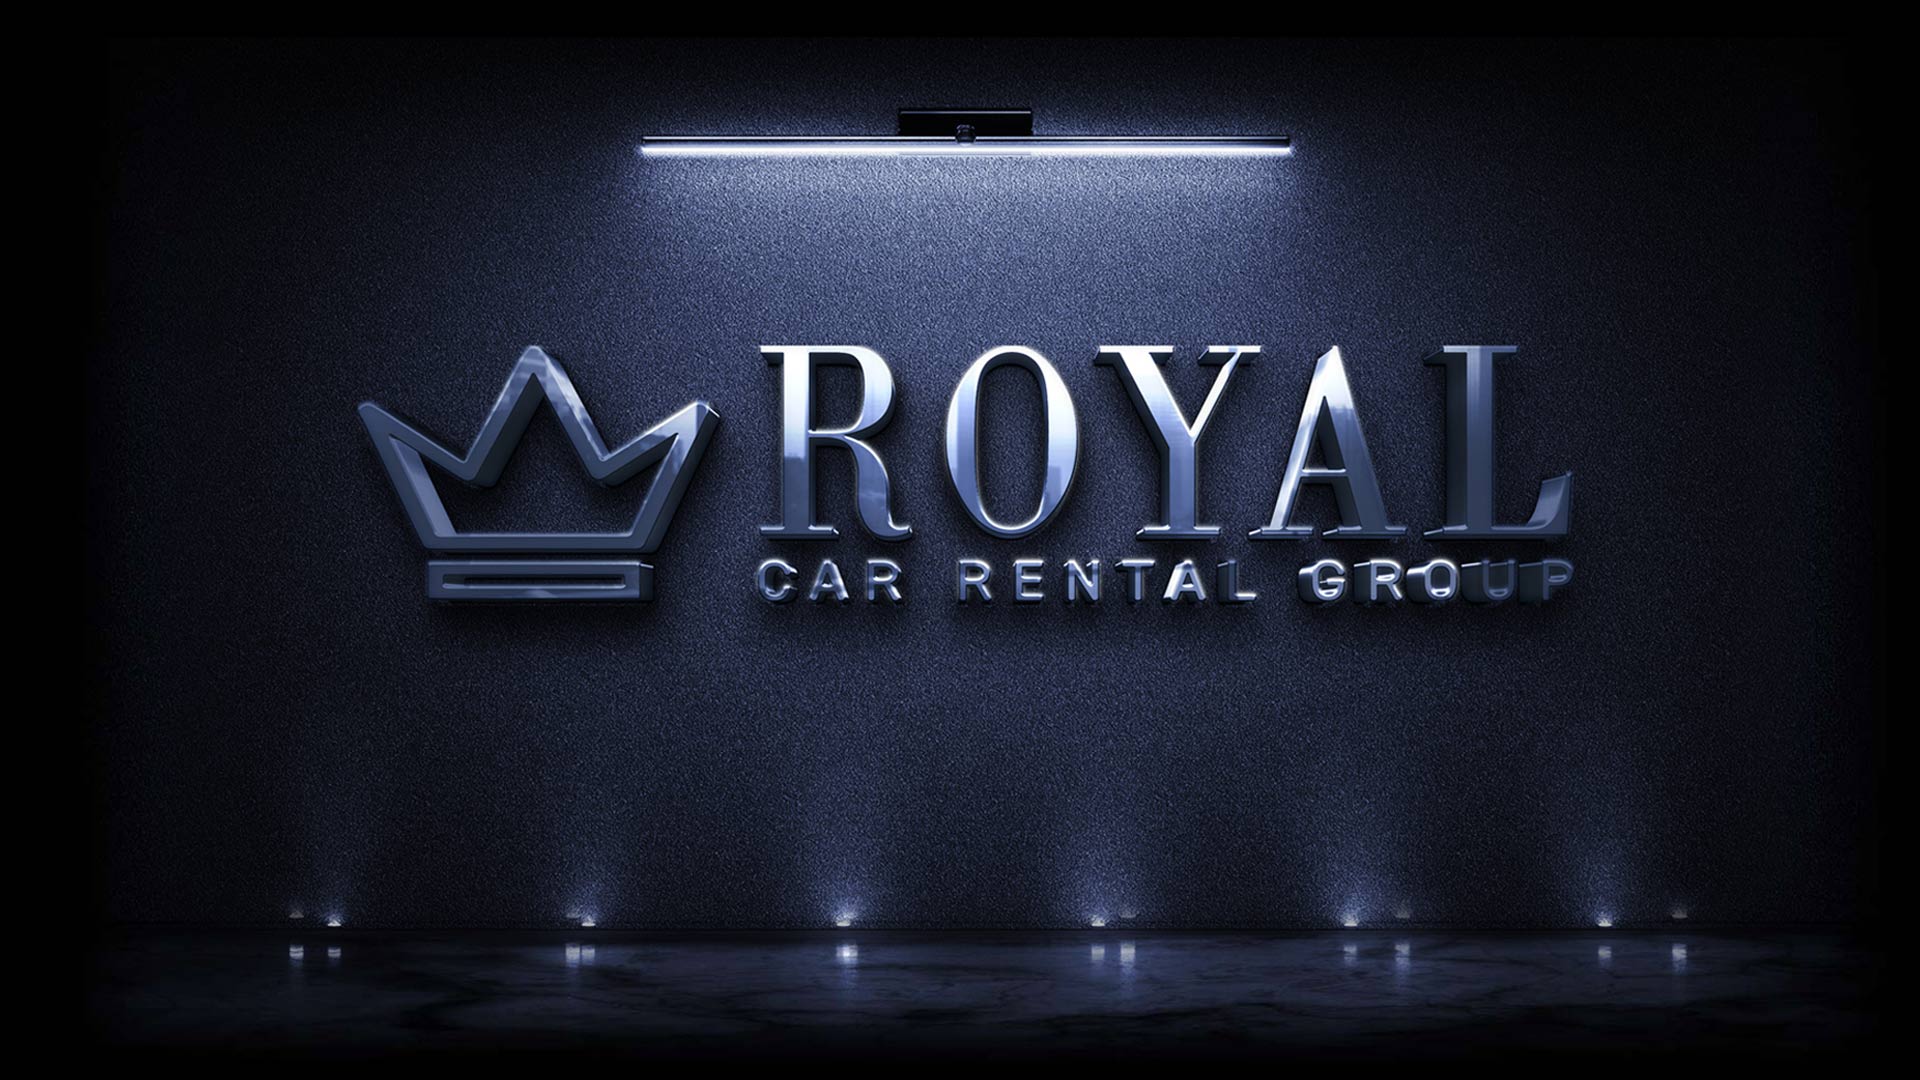 Royal Car Rental Group | Royal Car Rental Group